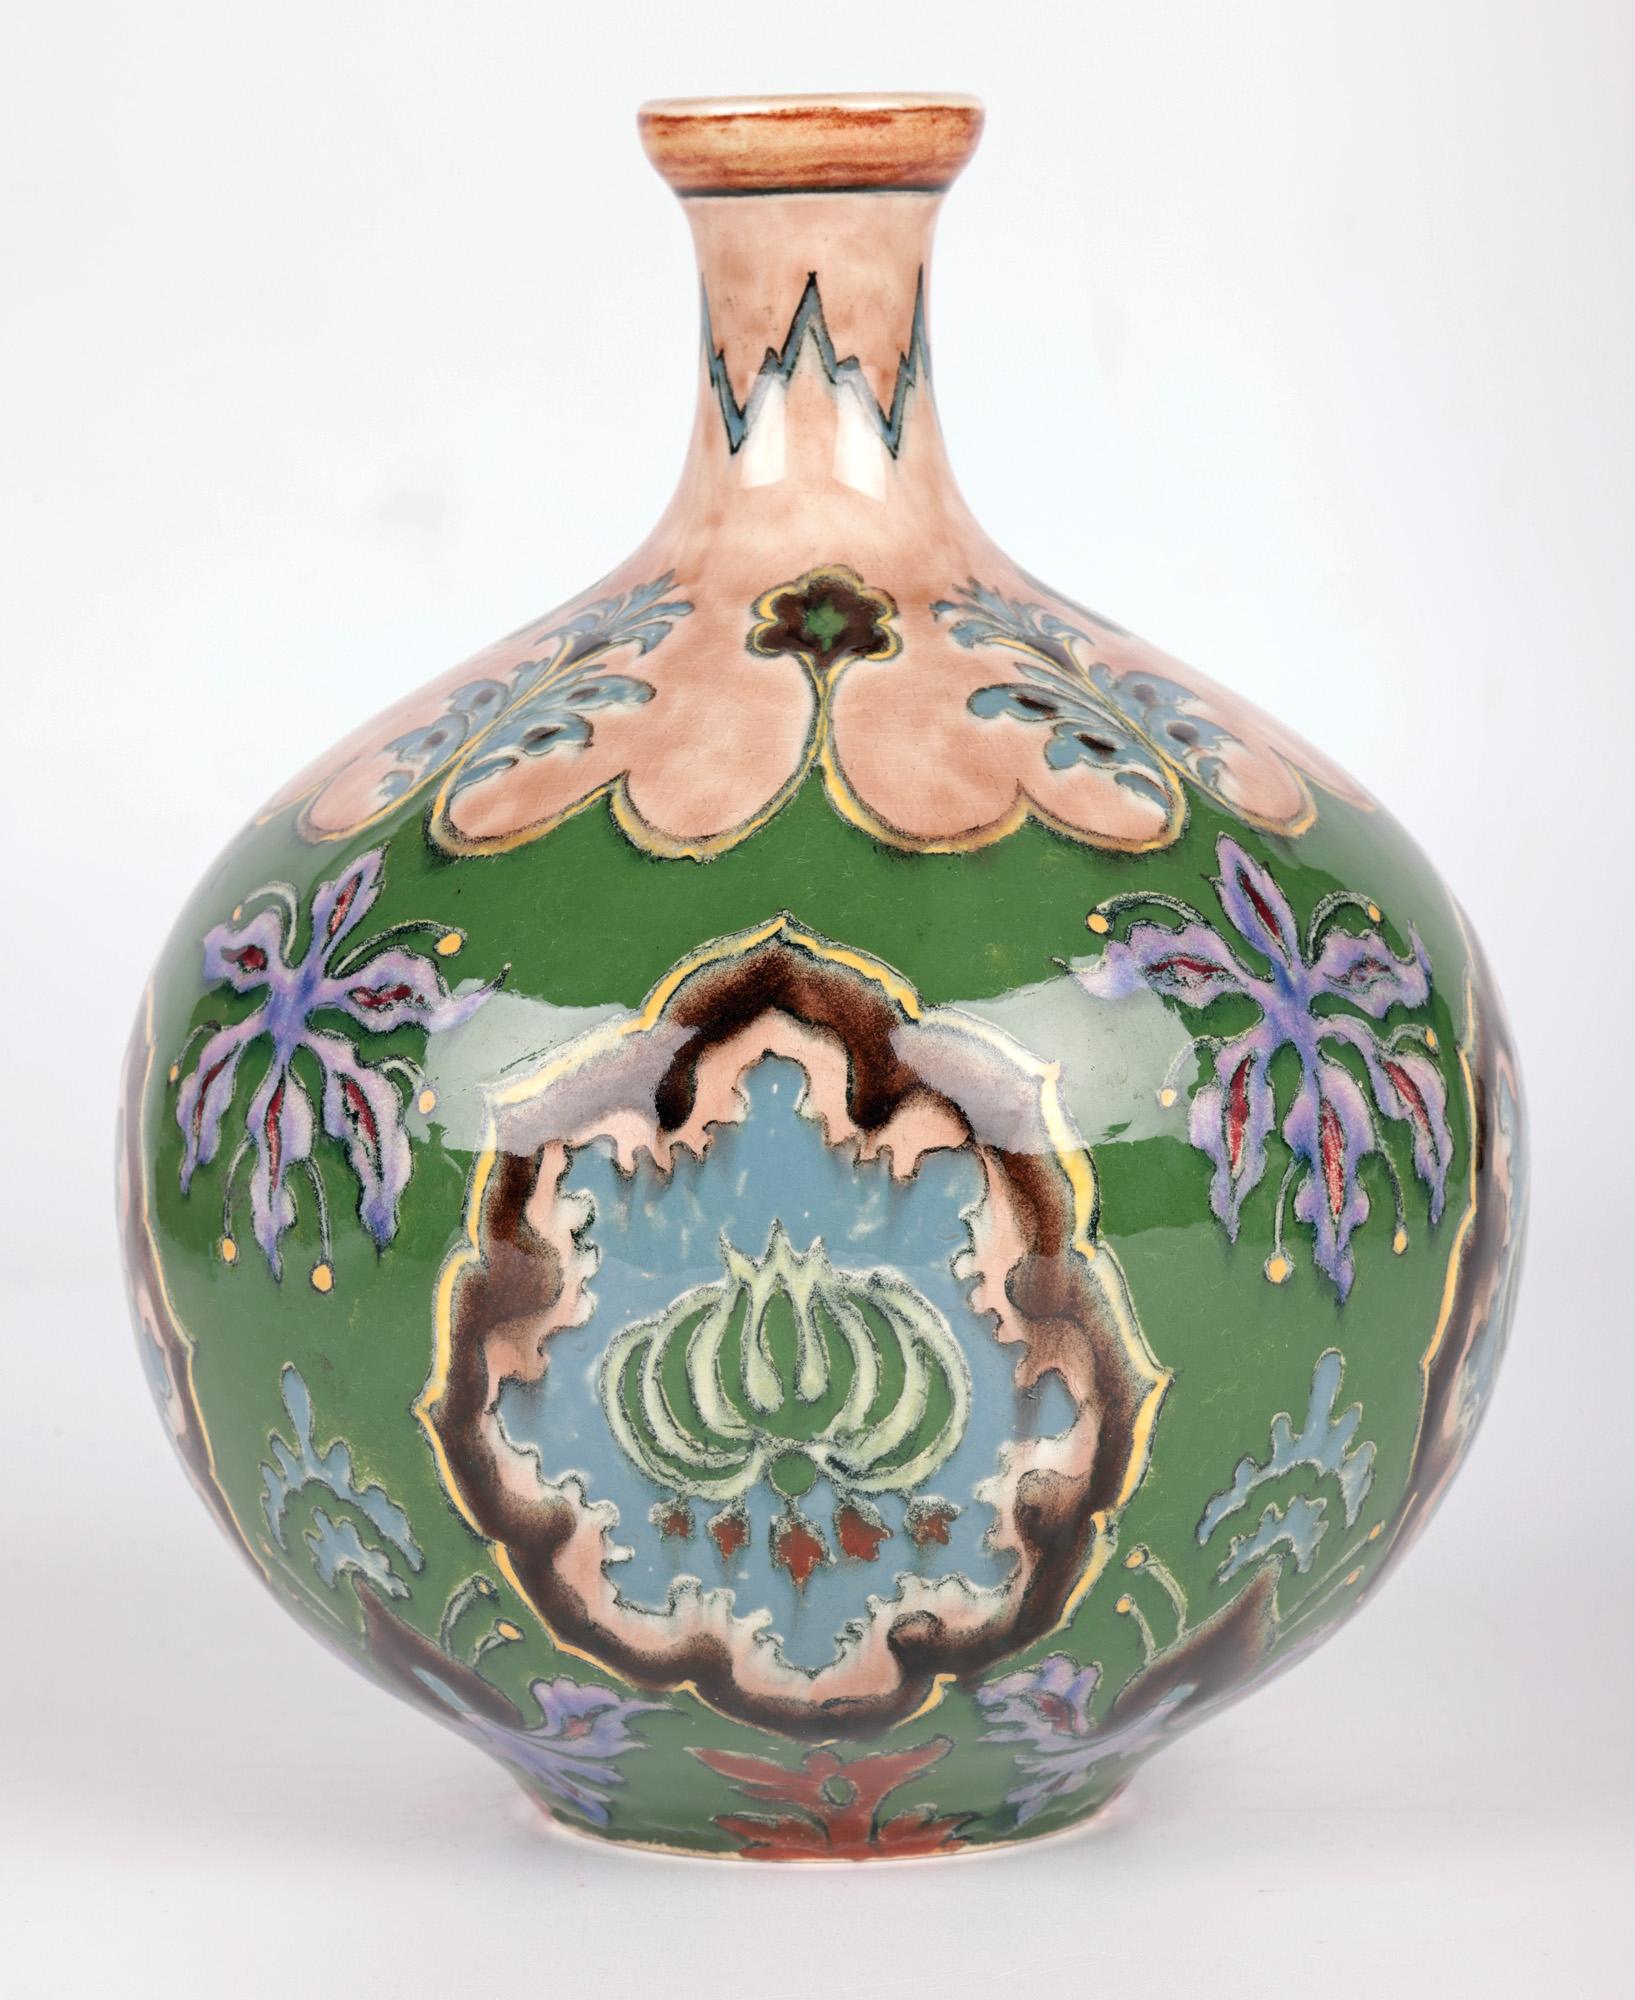 Ein feines und atemberaubendes deutsches Jugendstil-Paar handbemalter Keramikvasen mit floralen Motiven aus der renommierten Manufaktur Royal Bonn aus der Zeit um 1900. 
Die Königliche Bonner Keramik wurde 1836 von Franz Anton Mehlem gegründet und